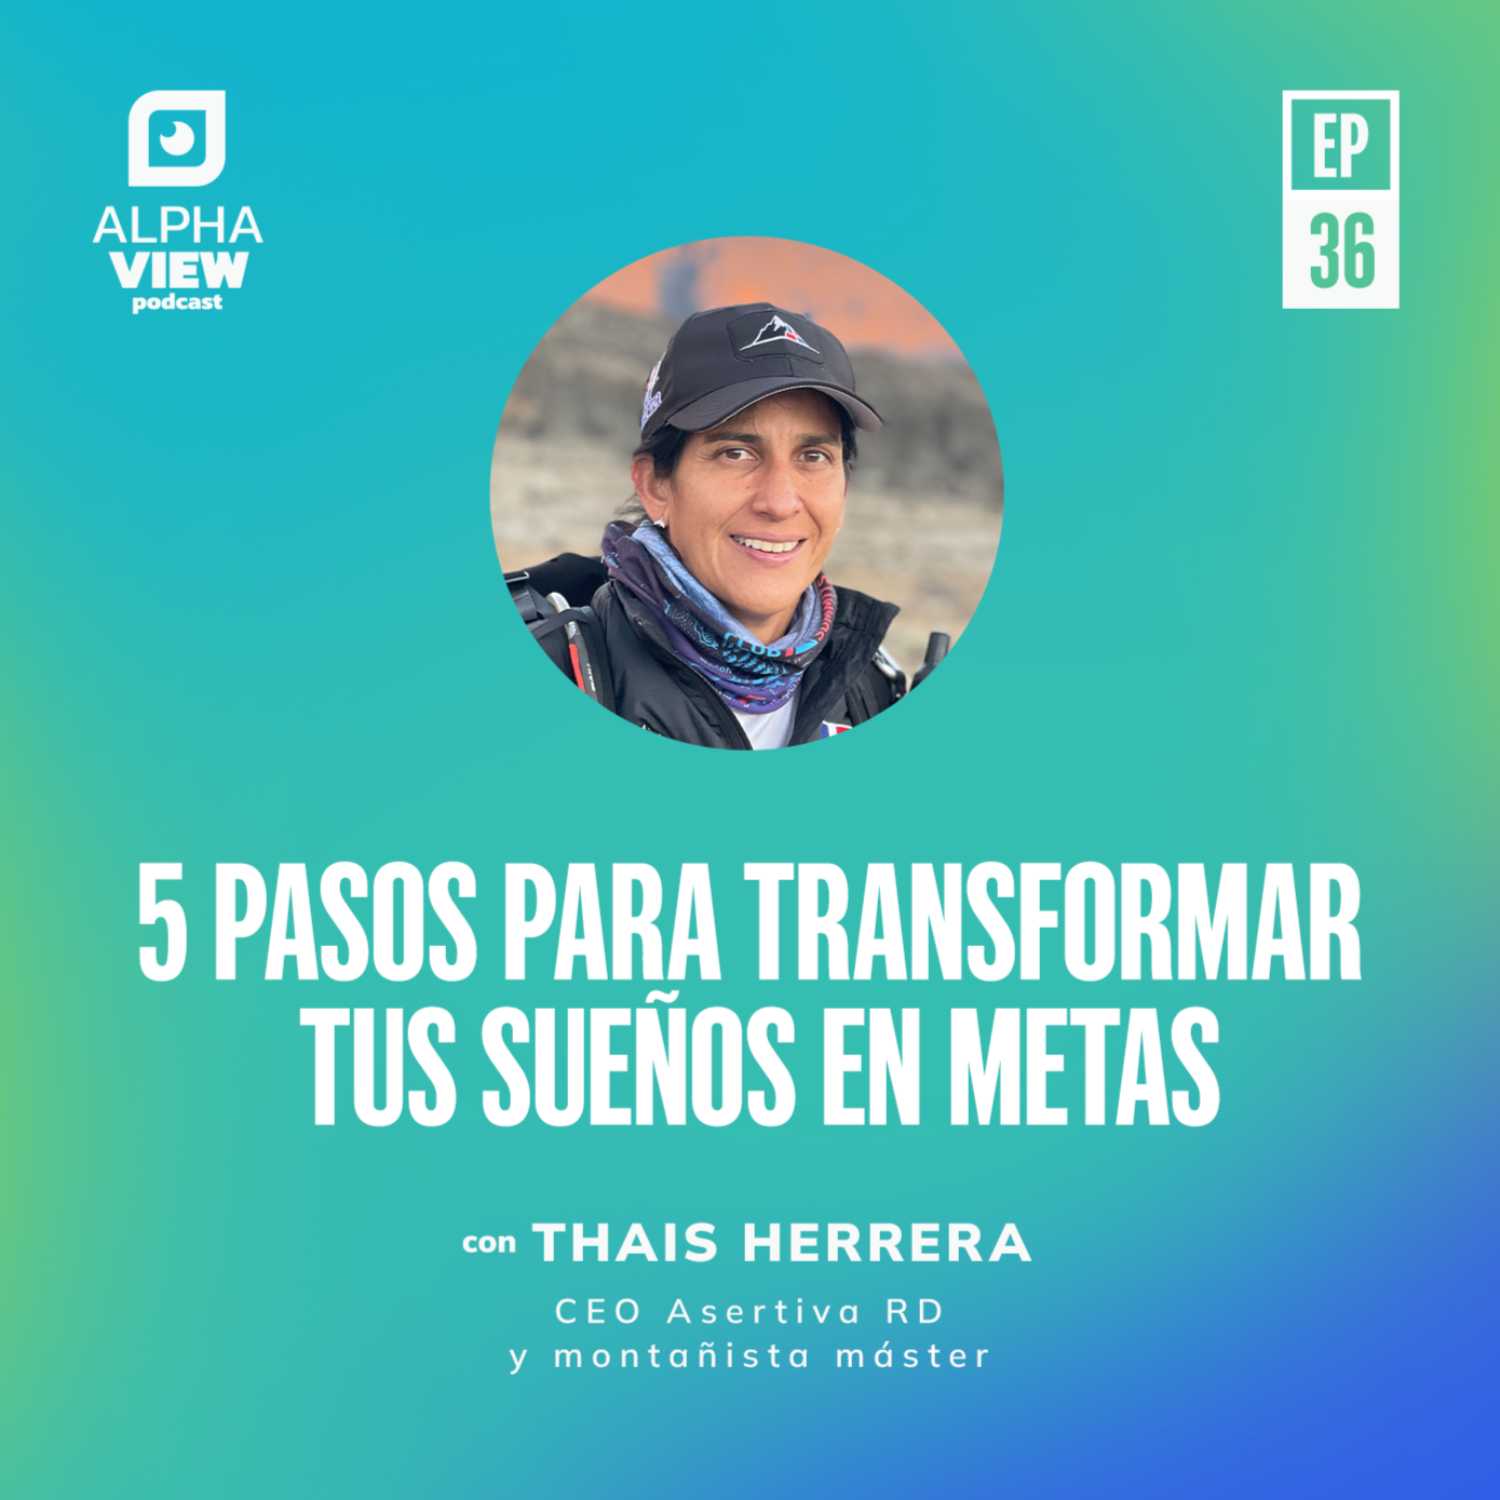 "5 pasos para transformar tus sueños en metas" con Thais Herrera